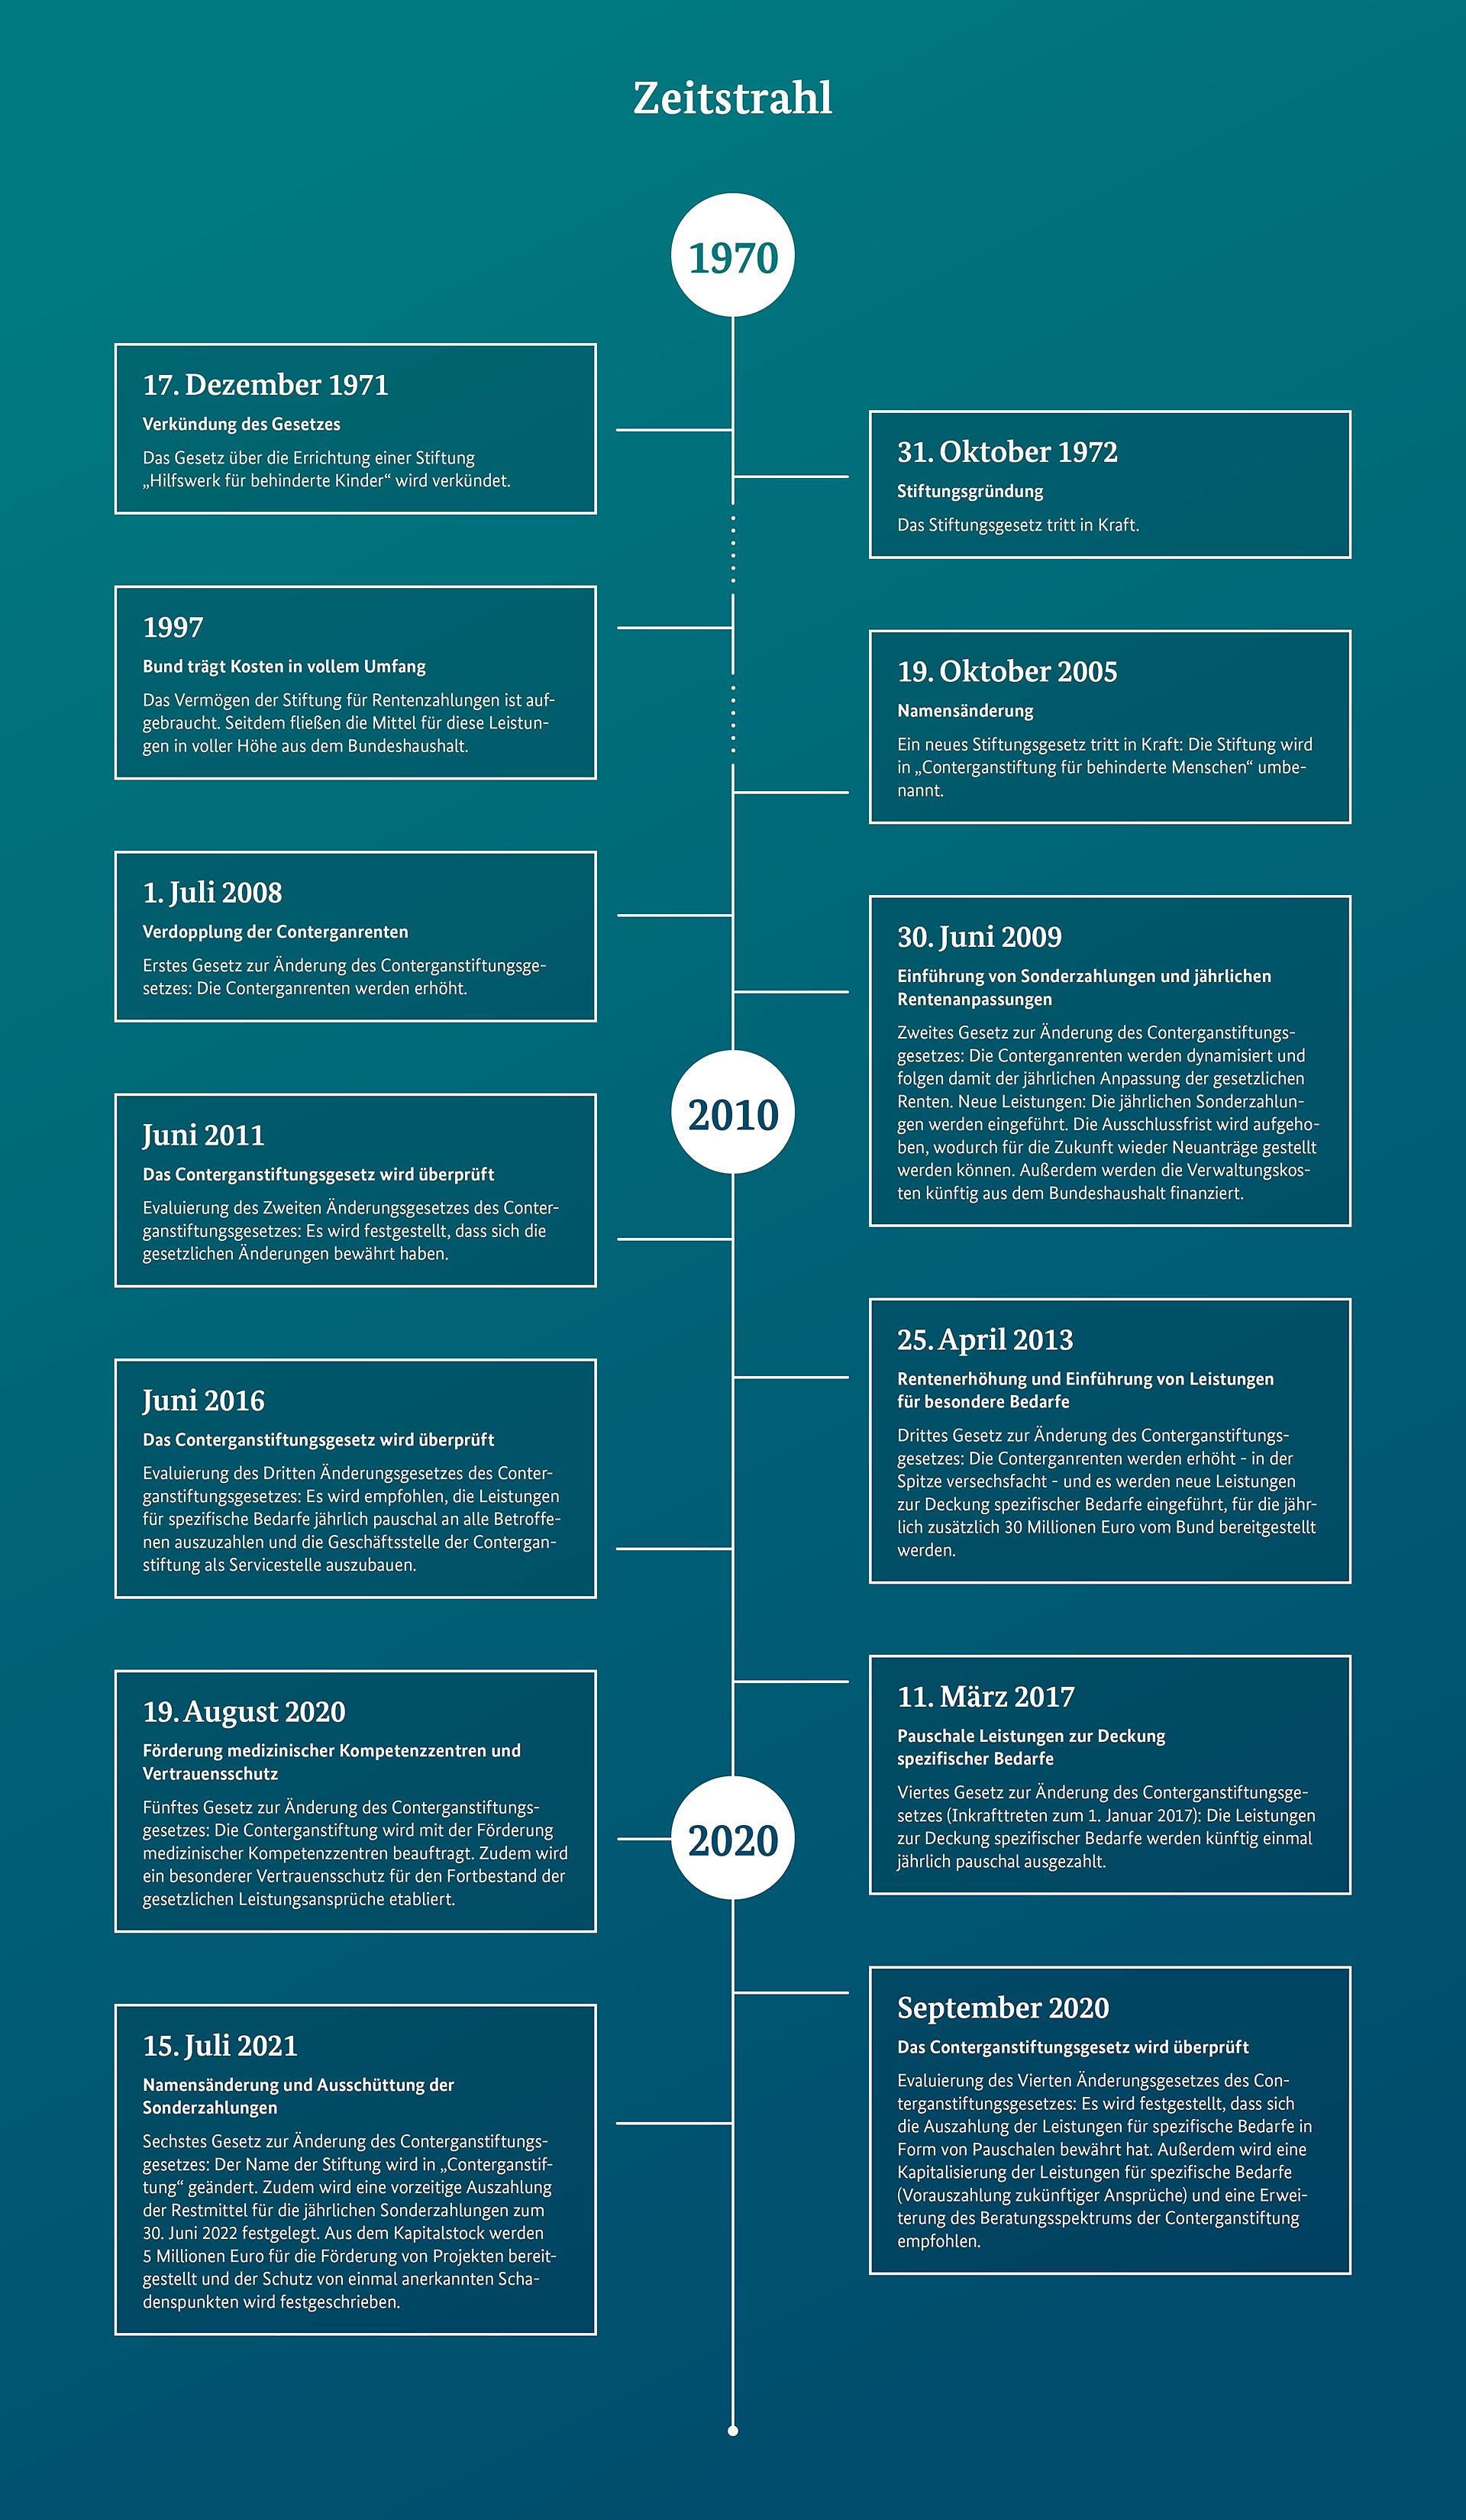 Die Infografik zeigt die Geschichte vom Gesetz zur Gründung der Stiftung bis zum sechsten Änderung des Gesetzes